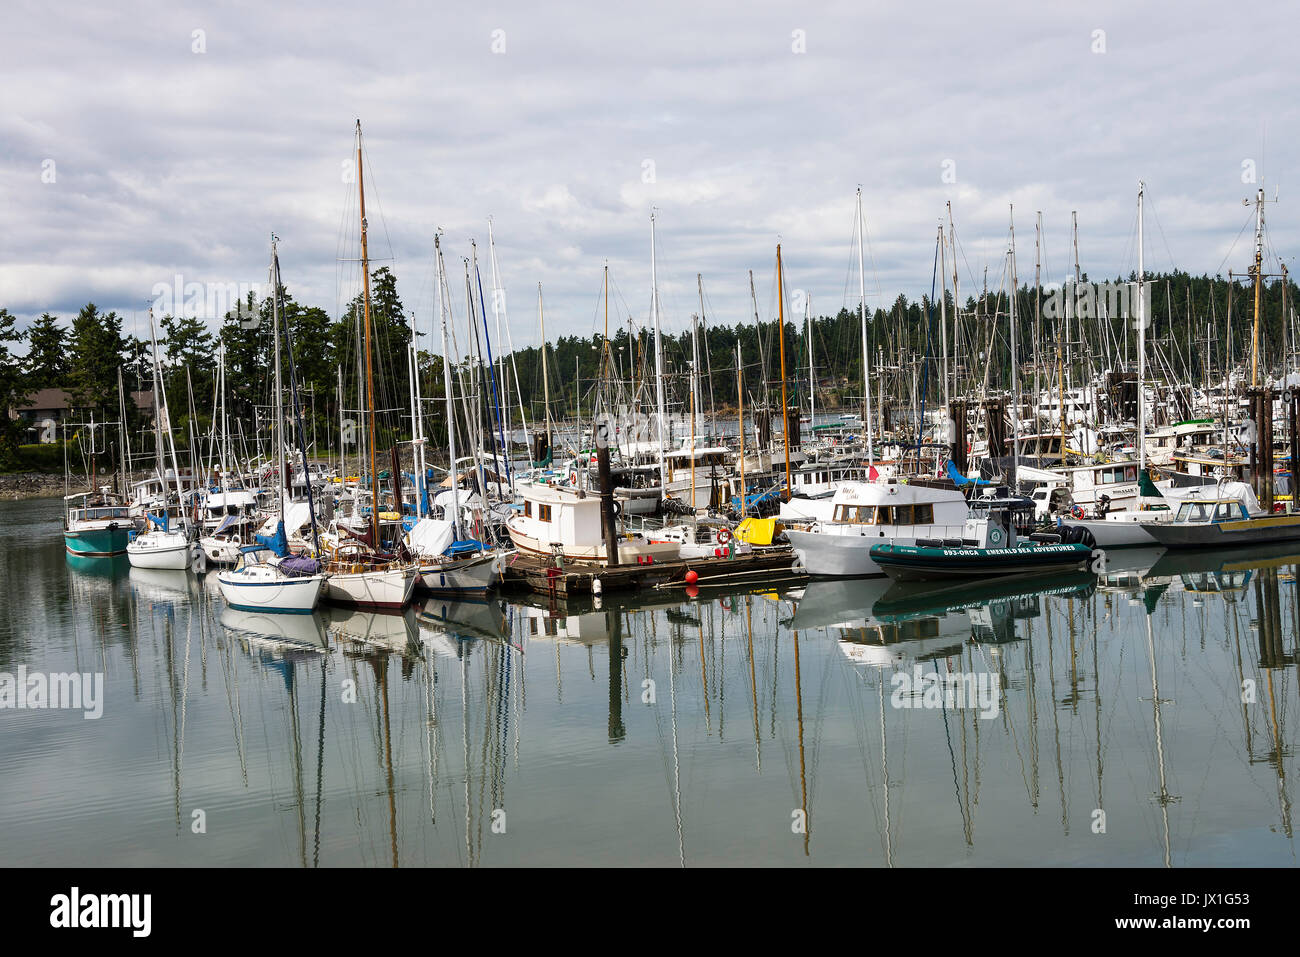 Comme miroir d'images de yachts et bateaux à quai dans une marina à Tsehum Harbour, près de Victoria, sur l'île de Vancouver, British Columbia Canada Banque D'Images